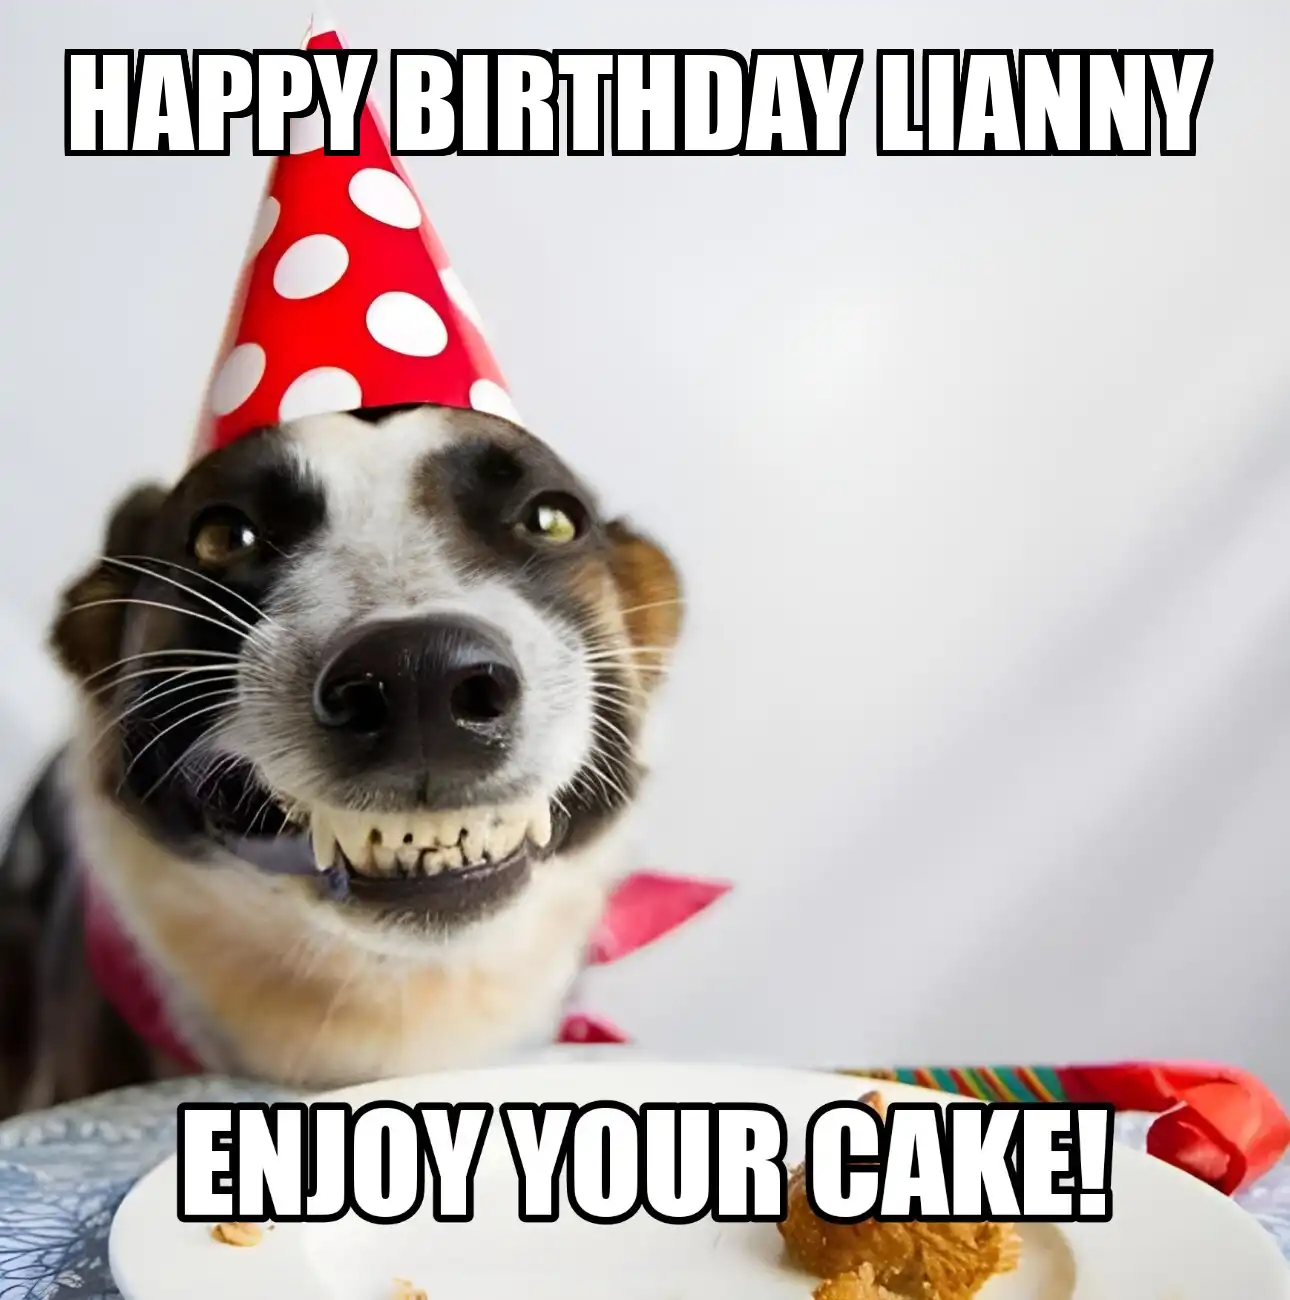 Happy Birthday Lianny Enjoy Your Cake Dog Meme